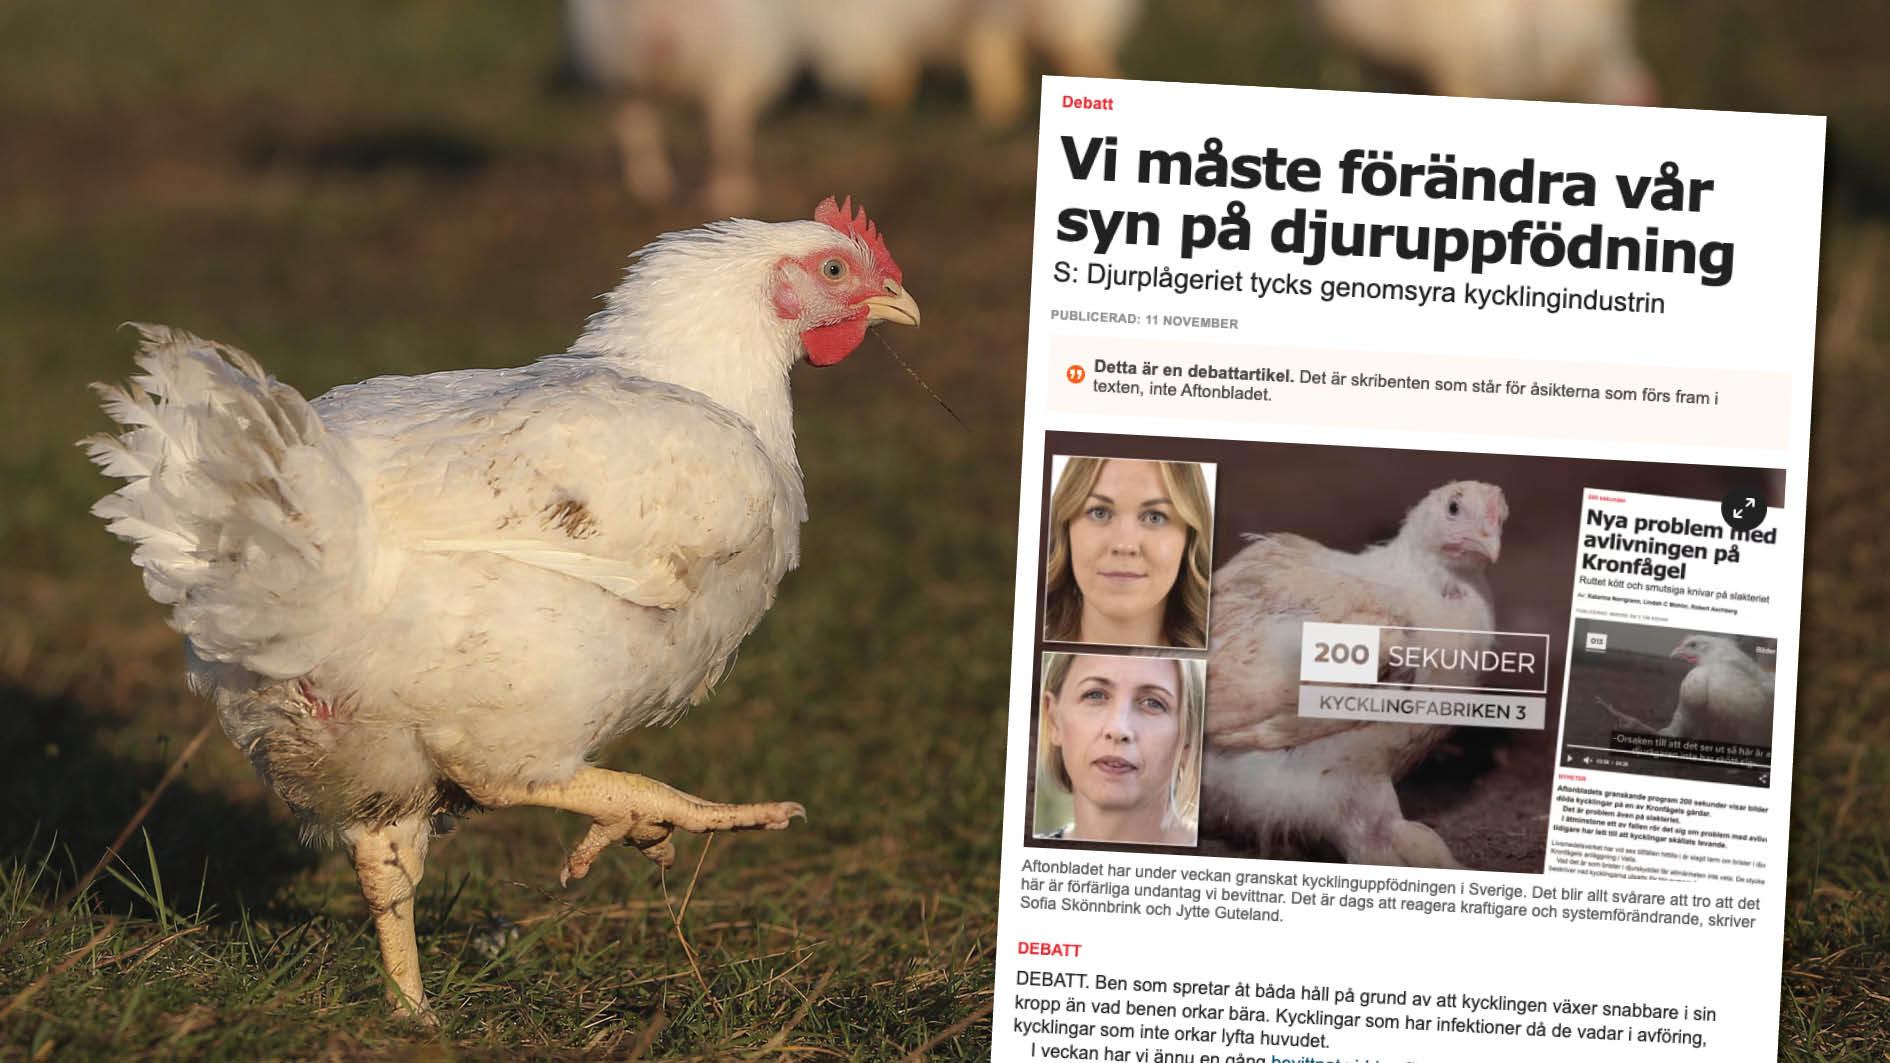 Vi hoppas att Jytte Guteland och Sofia Skönnbrink lämnar sina skrivbord och besöker något av våra lantbruk. Ni är välkomna att se hur svenska kycklingar föds upp i Sverige i dag. Replik från sju lantbrukare.